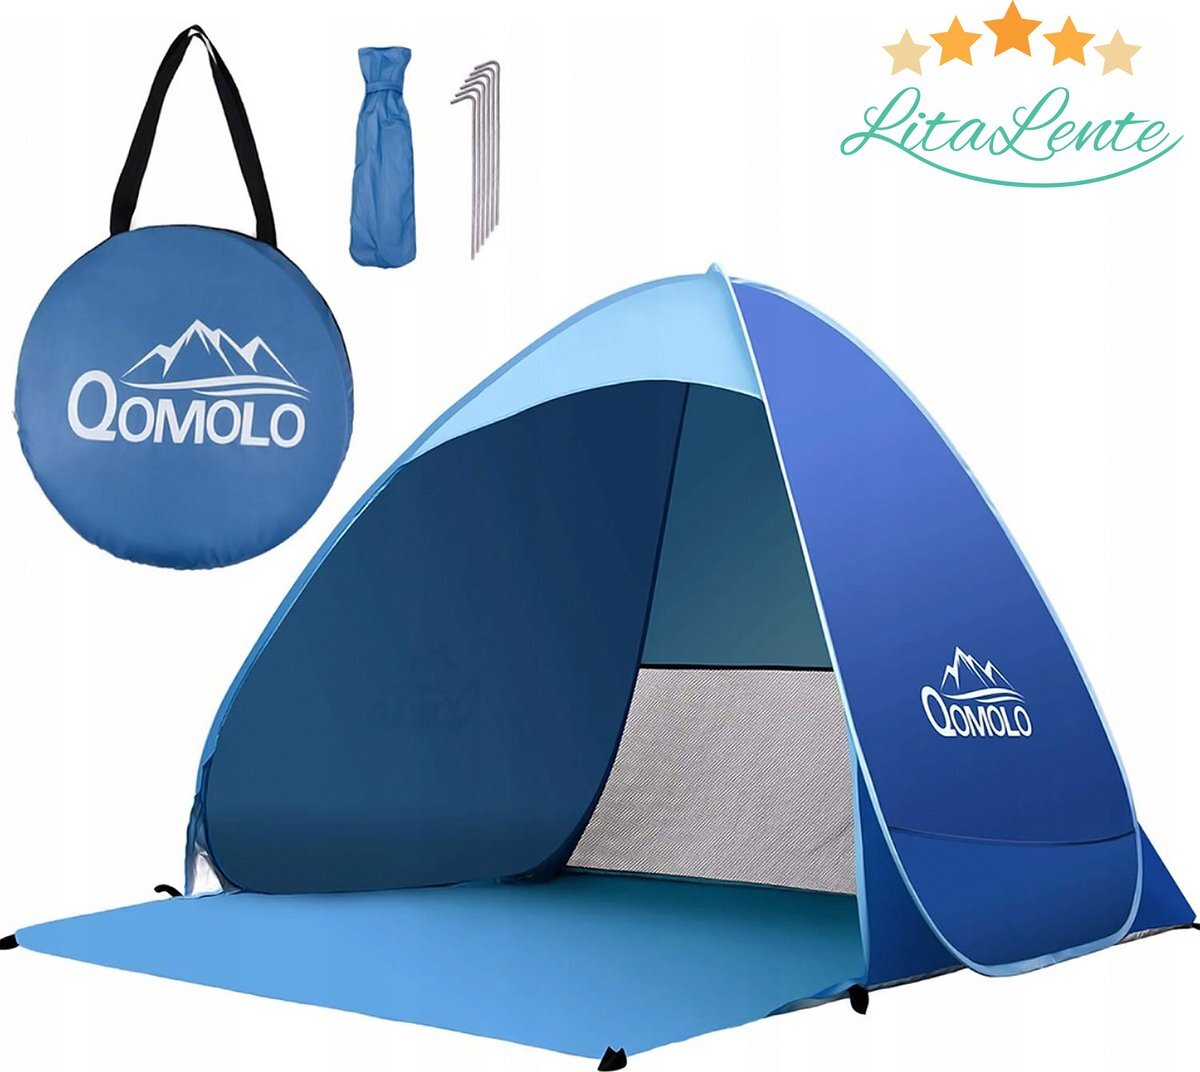 Litalente Strandtent- pop-up strandtent-draagbare tent-Anti-UV 50+ - blauw met draagtas - strandtent uv bescherming